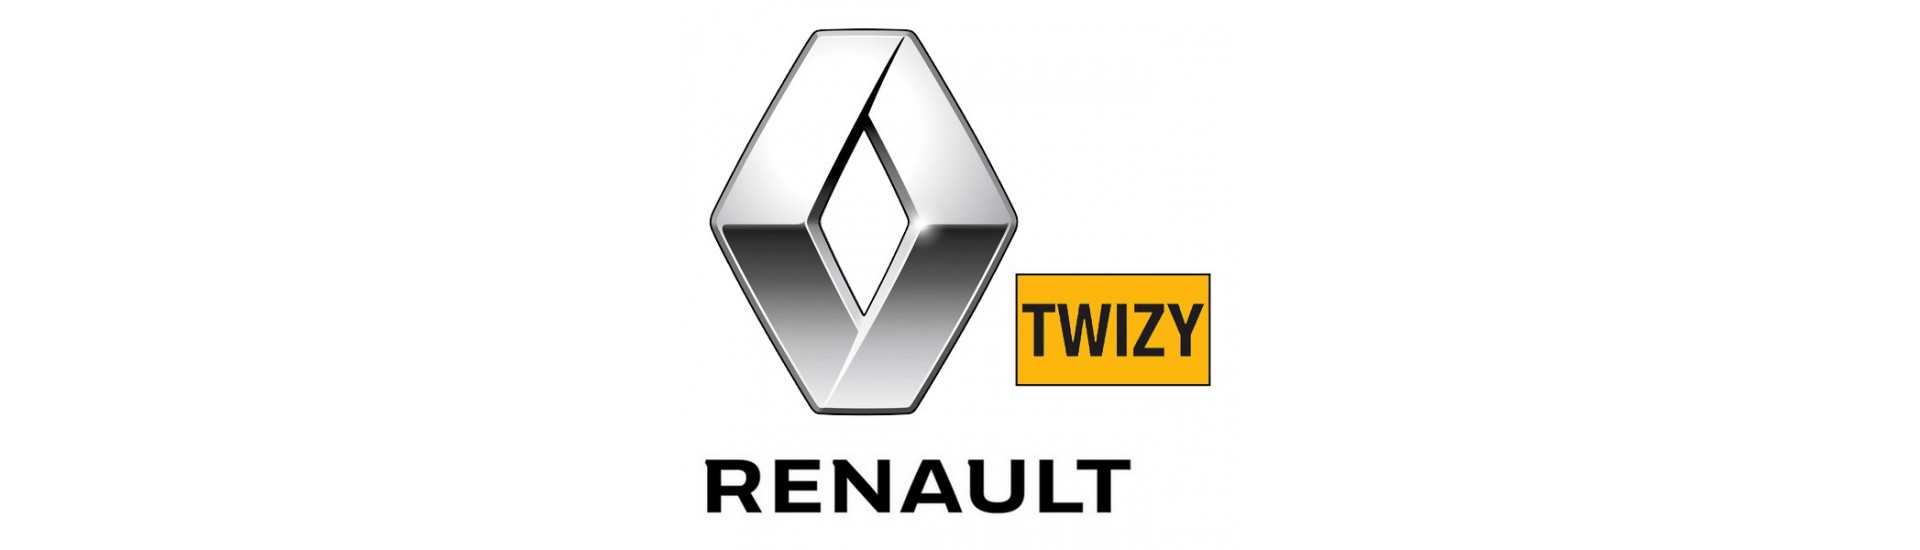 Bordtabell zum besten Preis Auto ohne Lizenz Renault Twizy